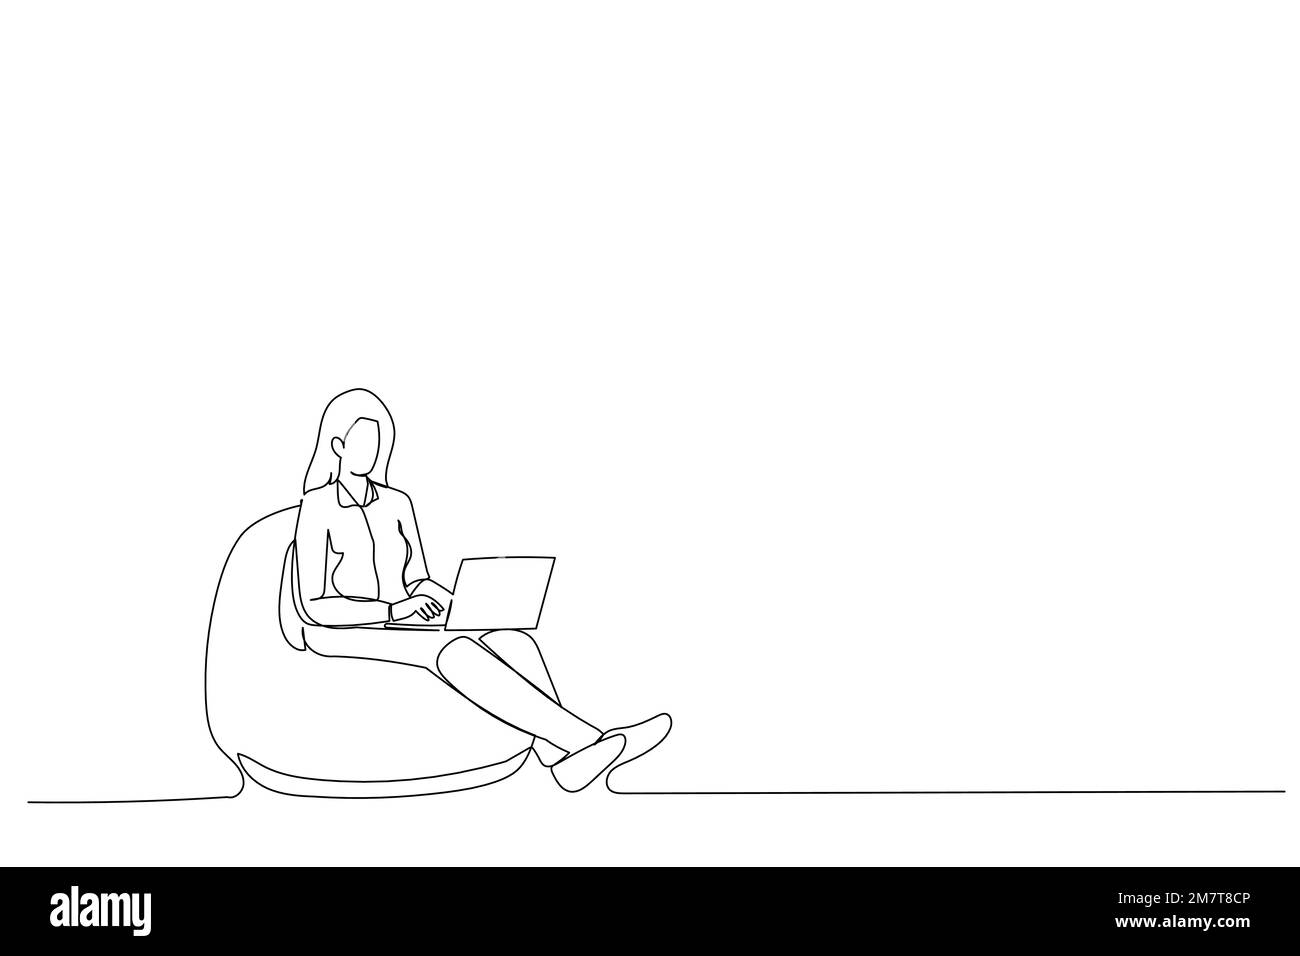 Dessin d'un employé de pdg assis bean chaise utiliser l'information de recherche d'ordinateur portable art ligne unique Illustration de Vecteur